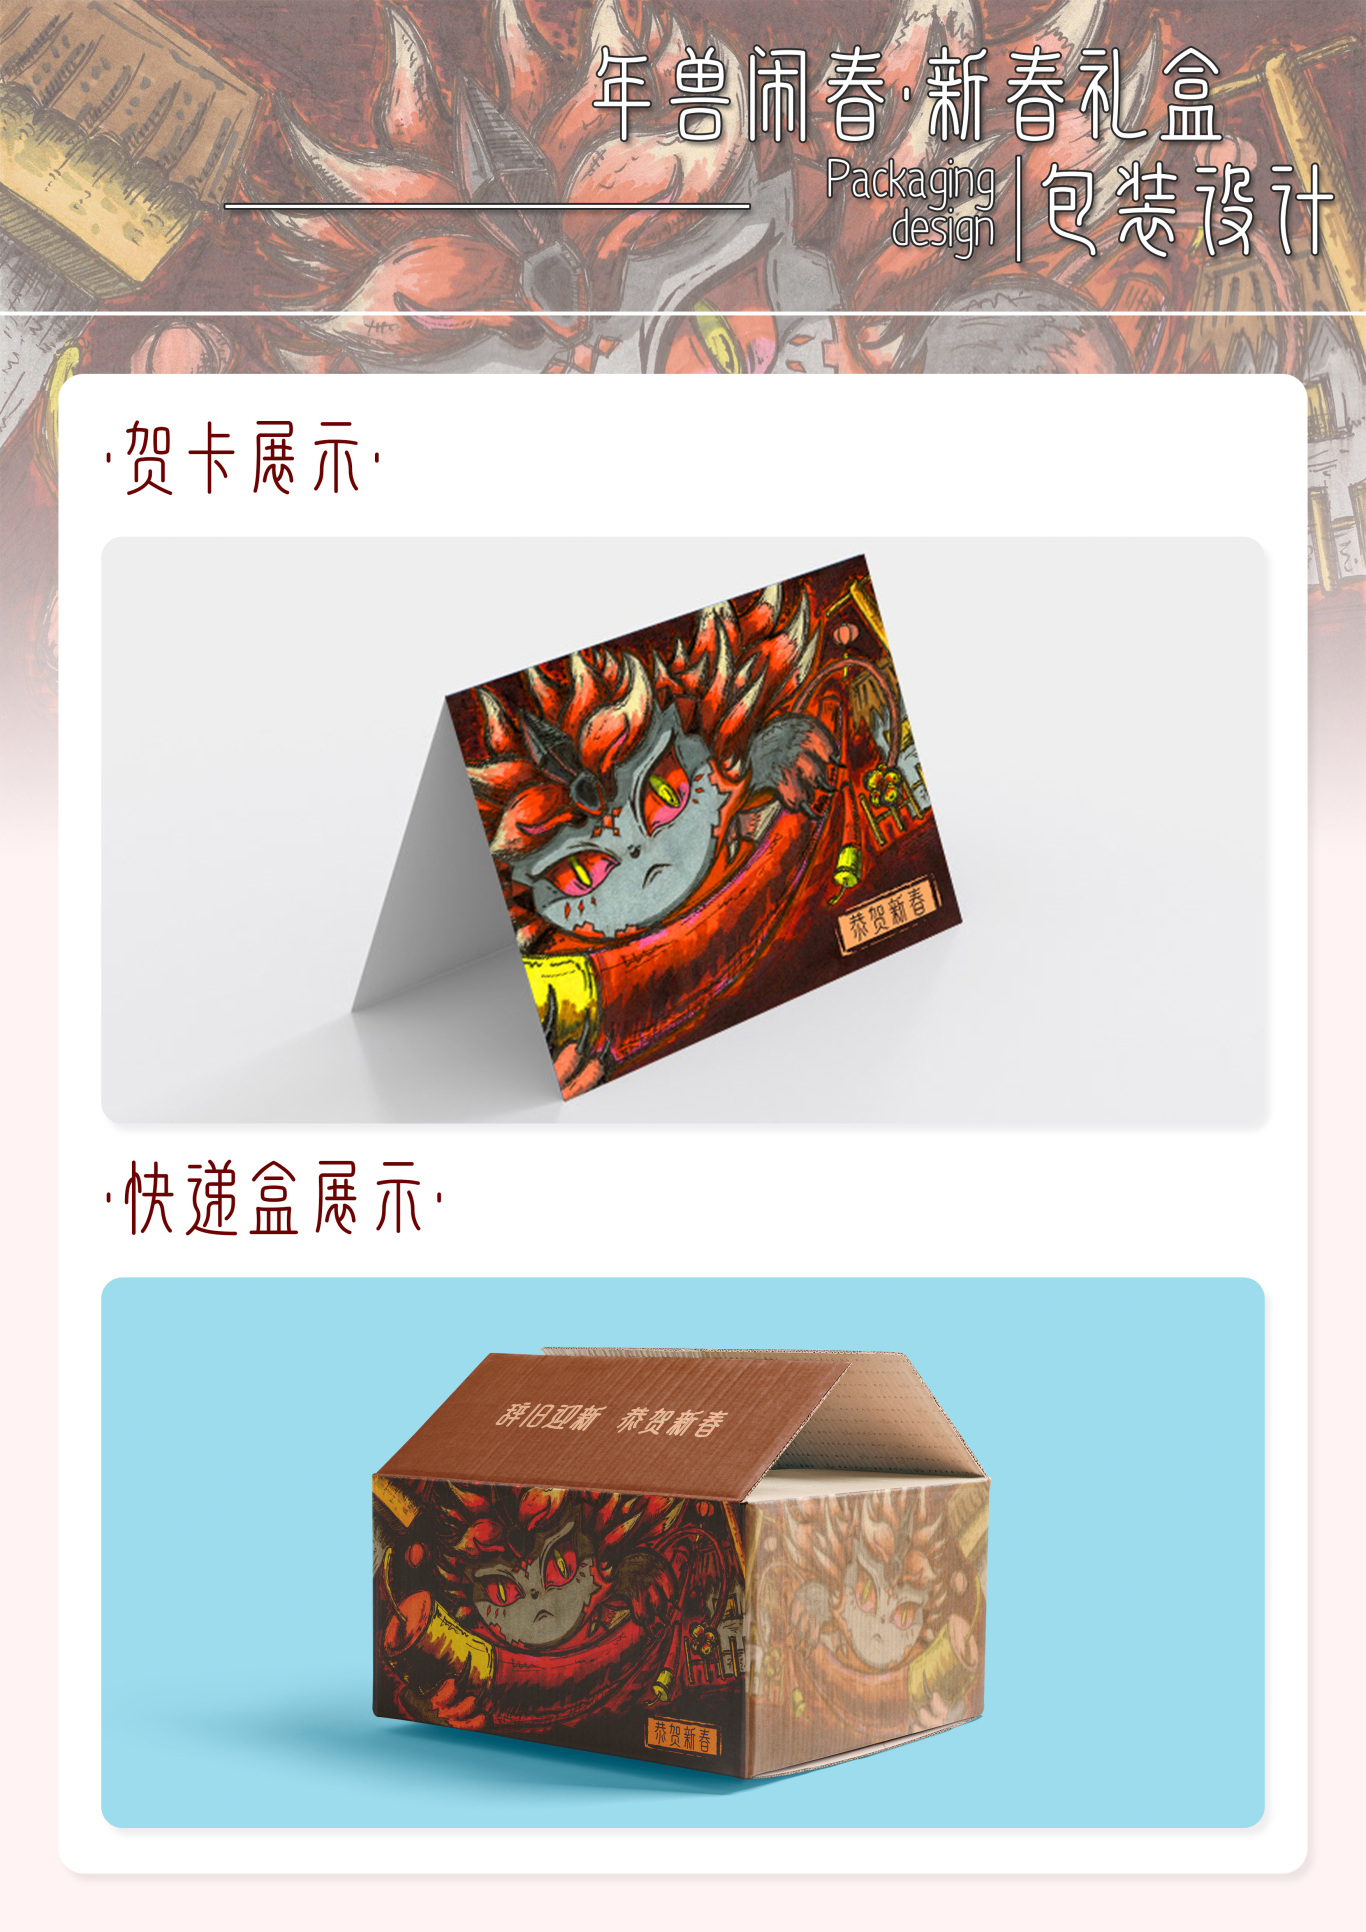 义乌小商品春节系列包装设计图3